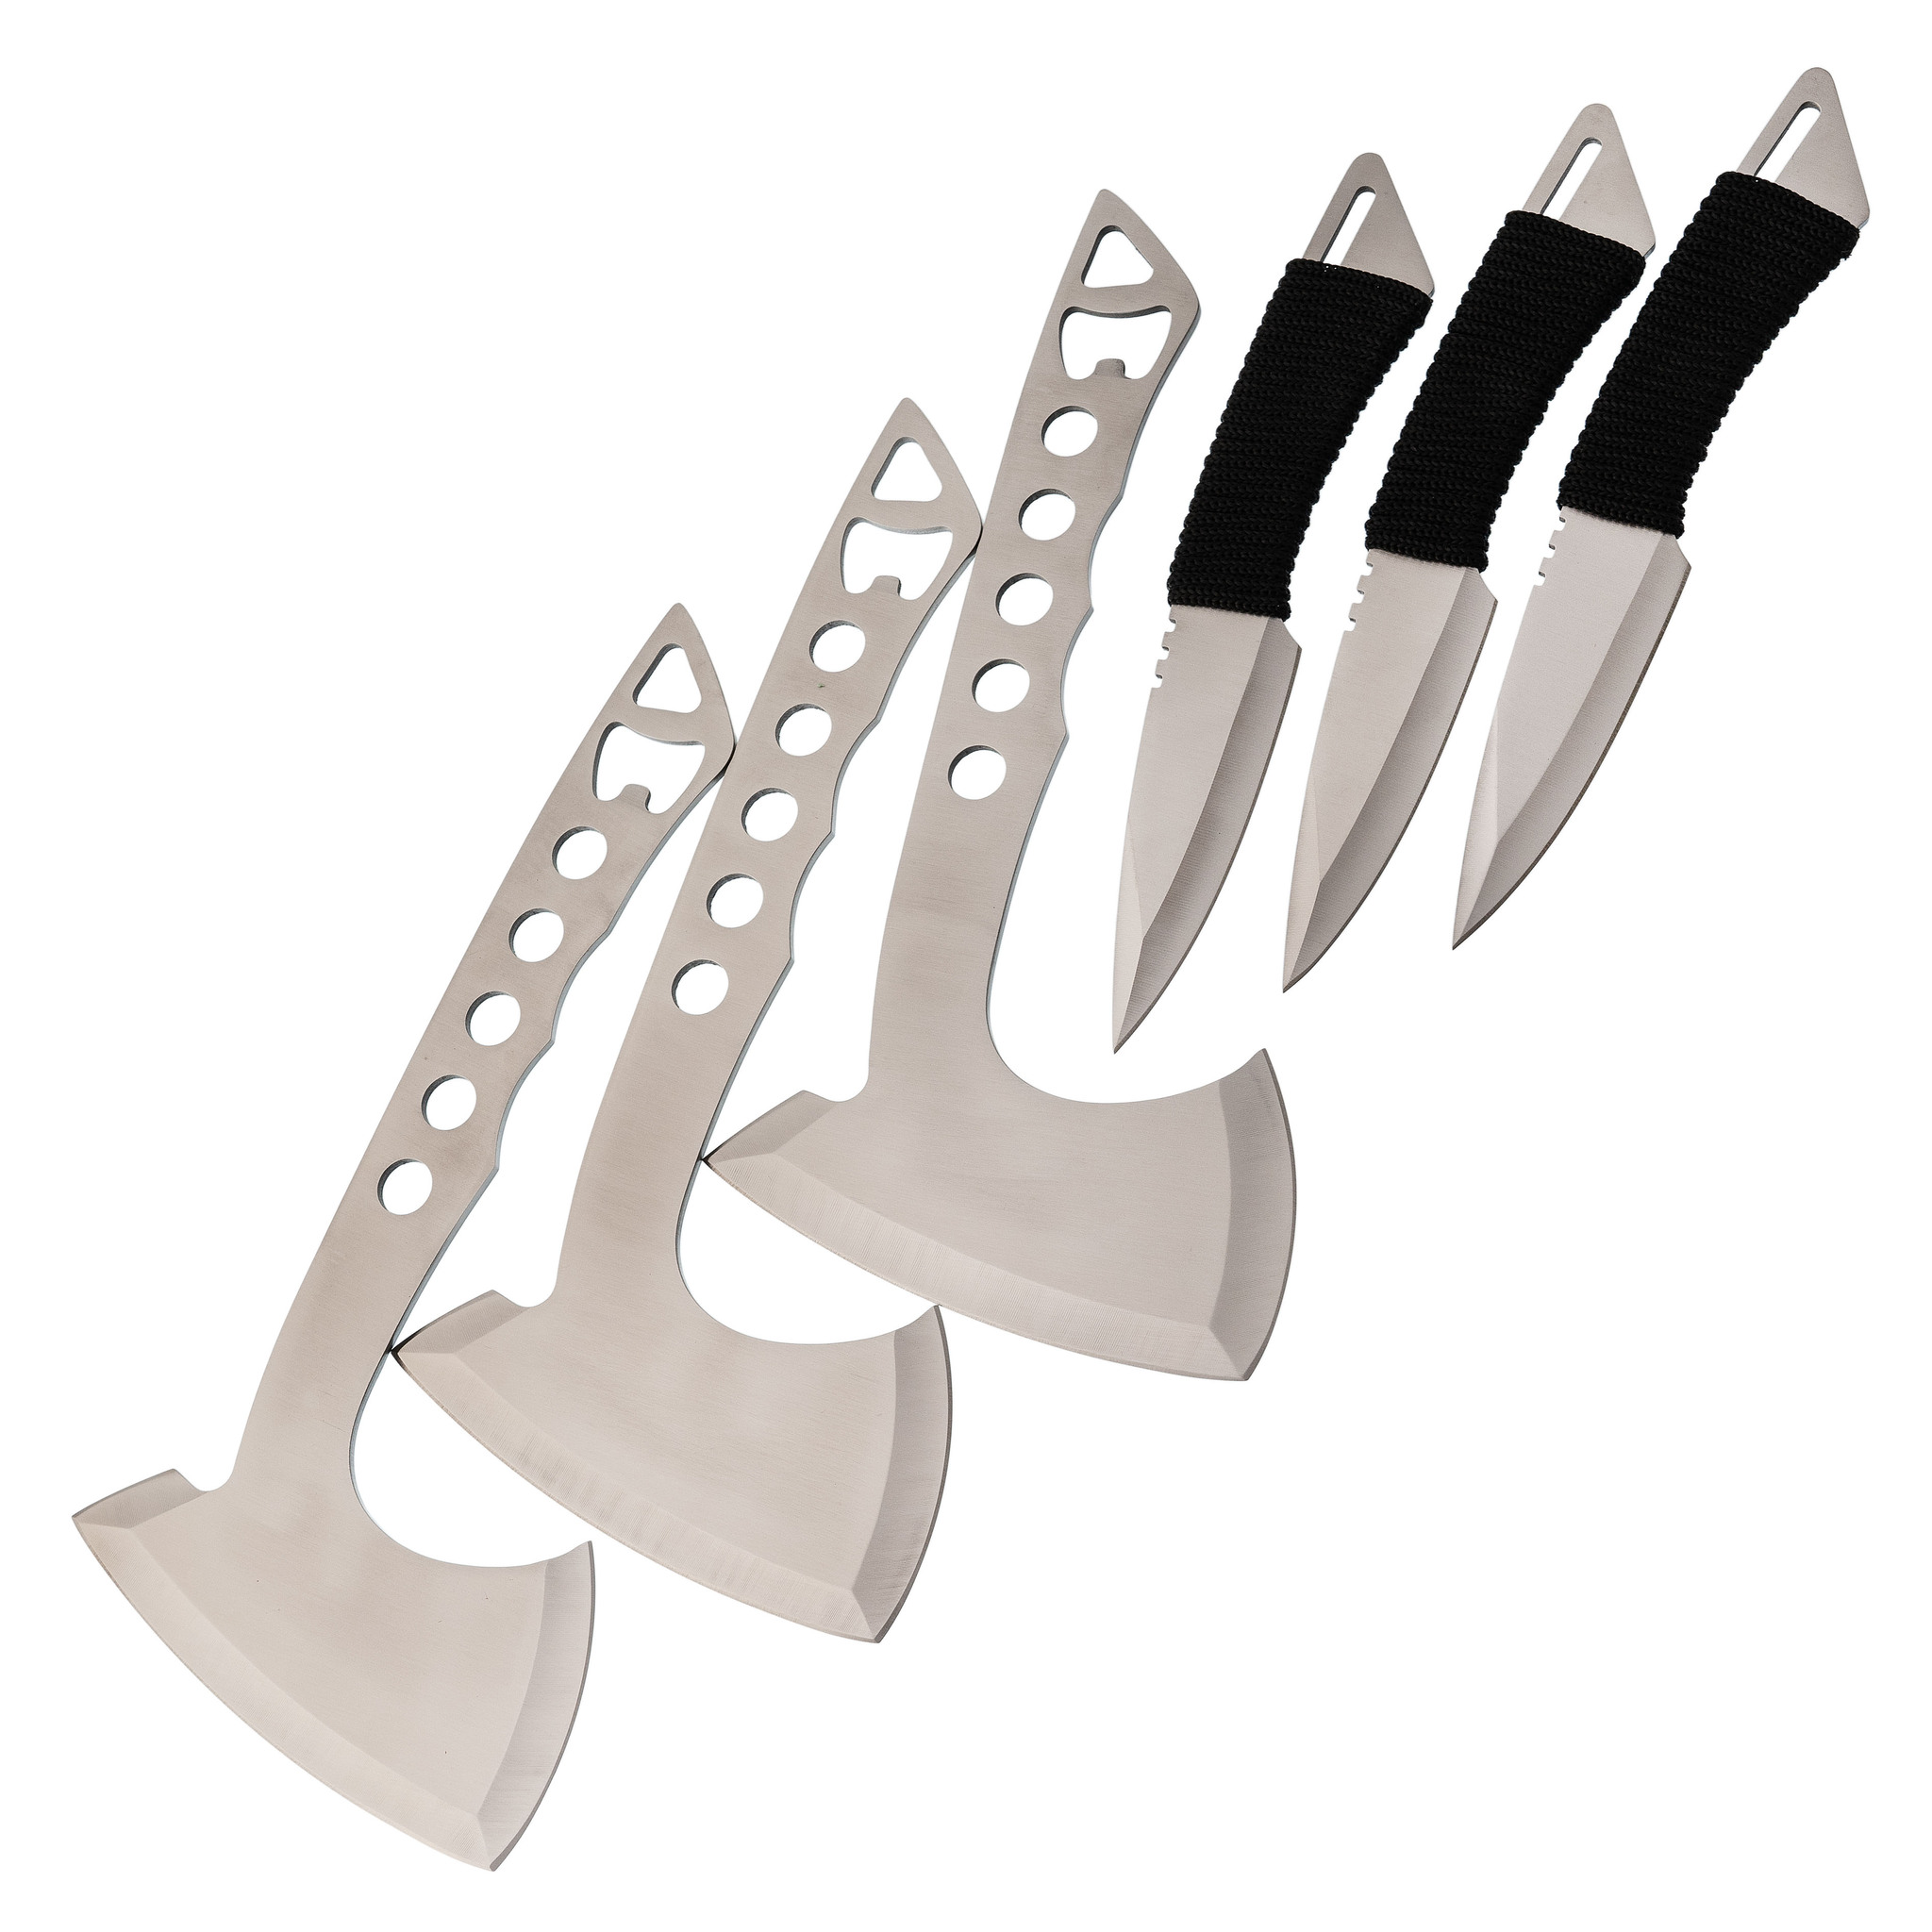 Набор спортивных топоров и ножей Баланс набор из 3 спортивных ножей триколор патриот